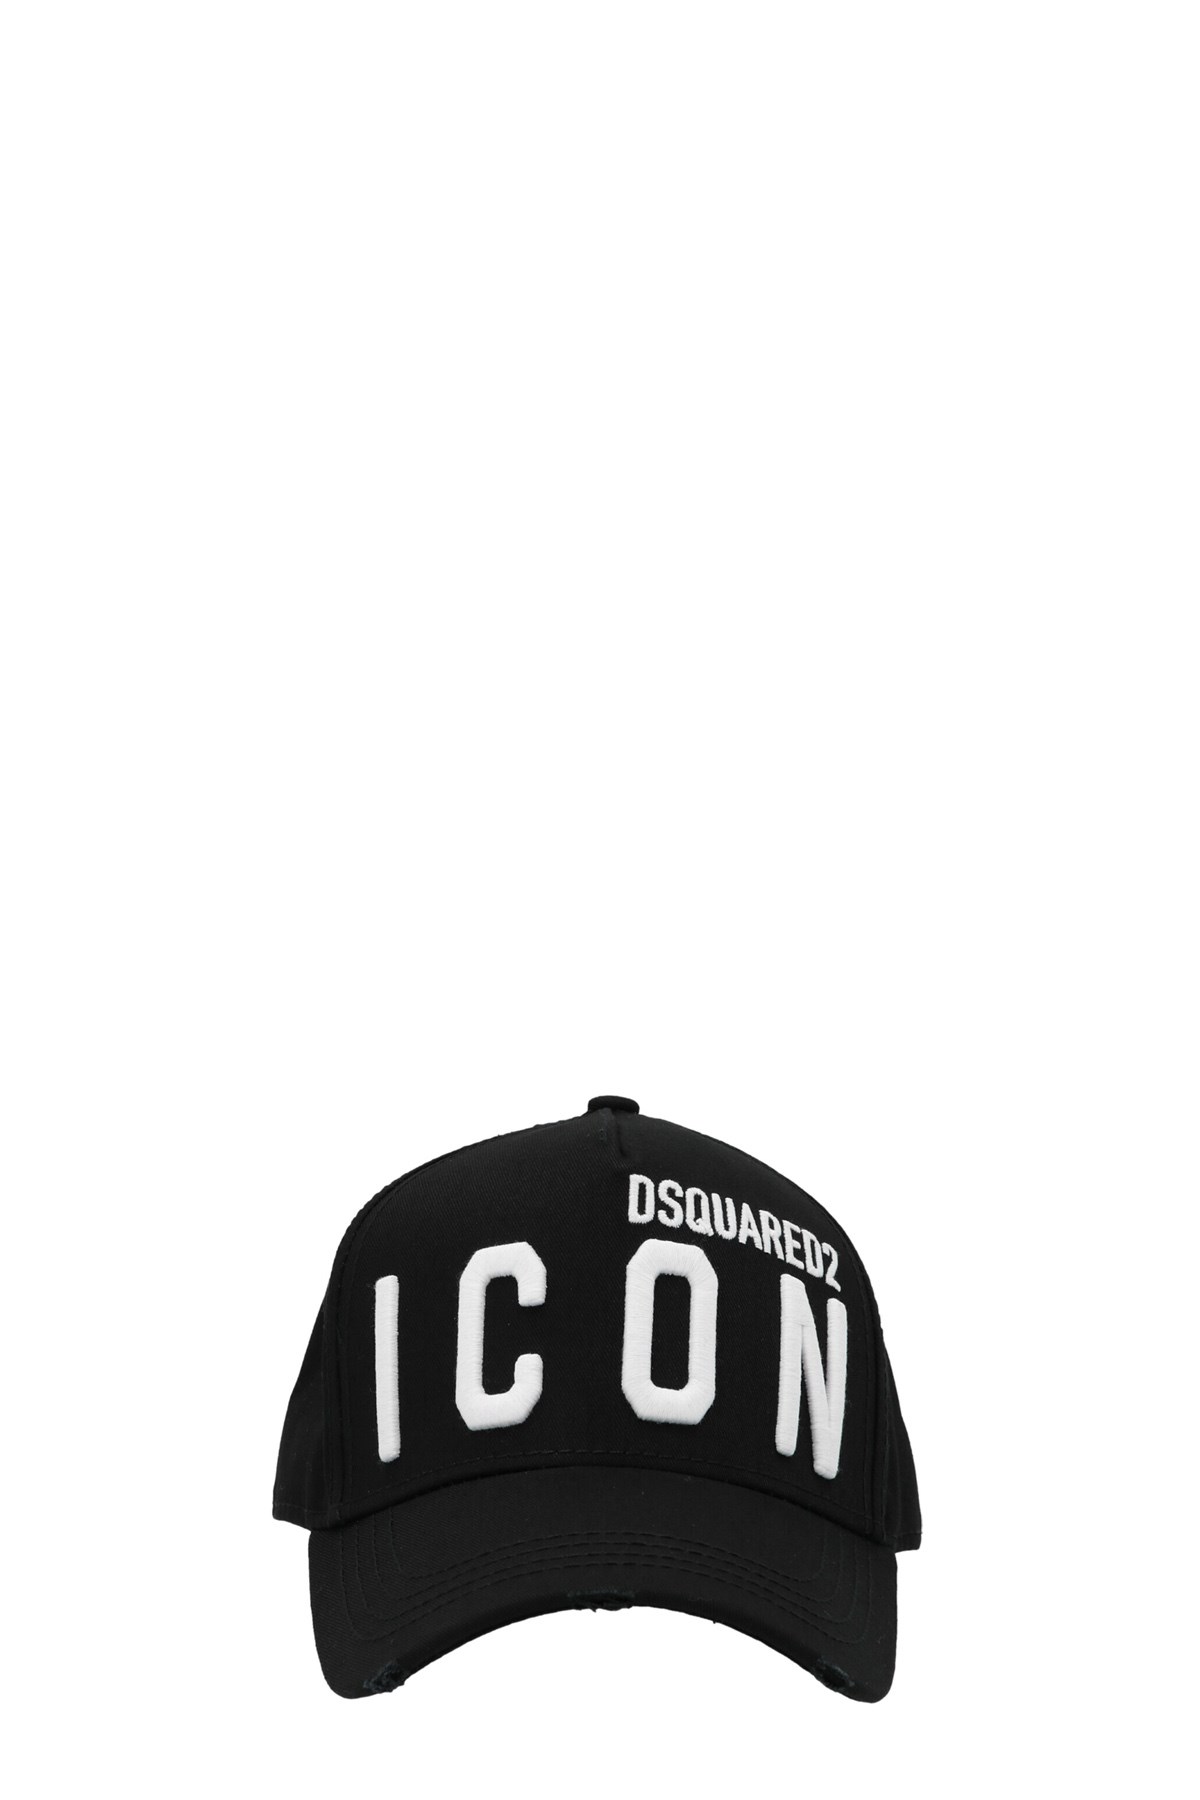 DSQUARED2 'Icon’ Cap